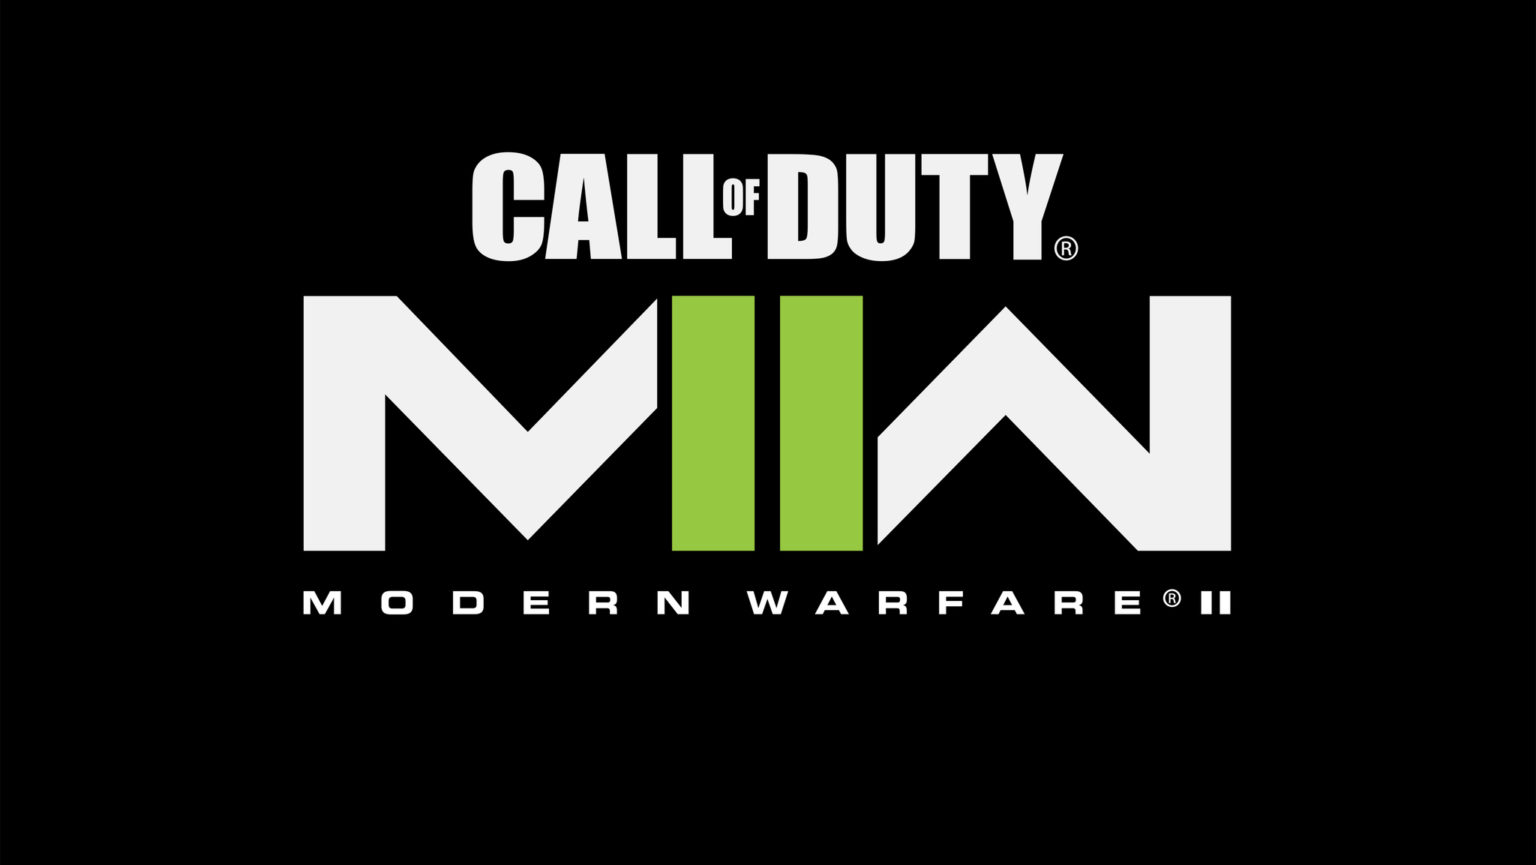 Annunciata la data di uscita di Call of Duty: Modern Warfare II (2)!